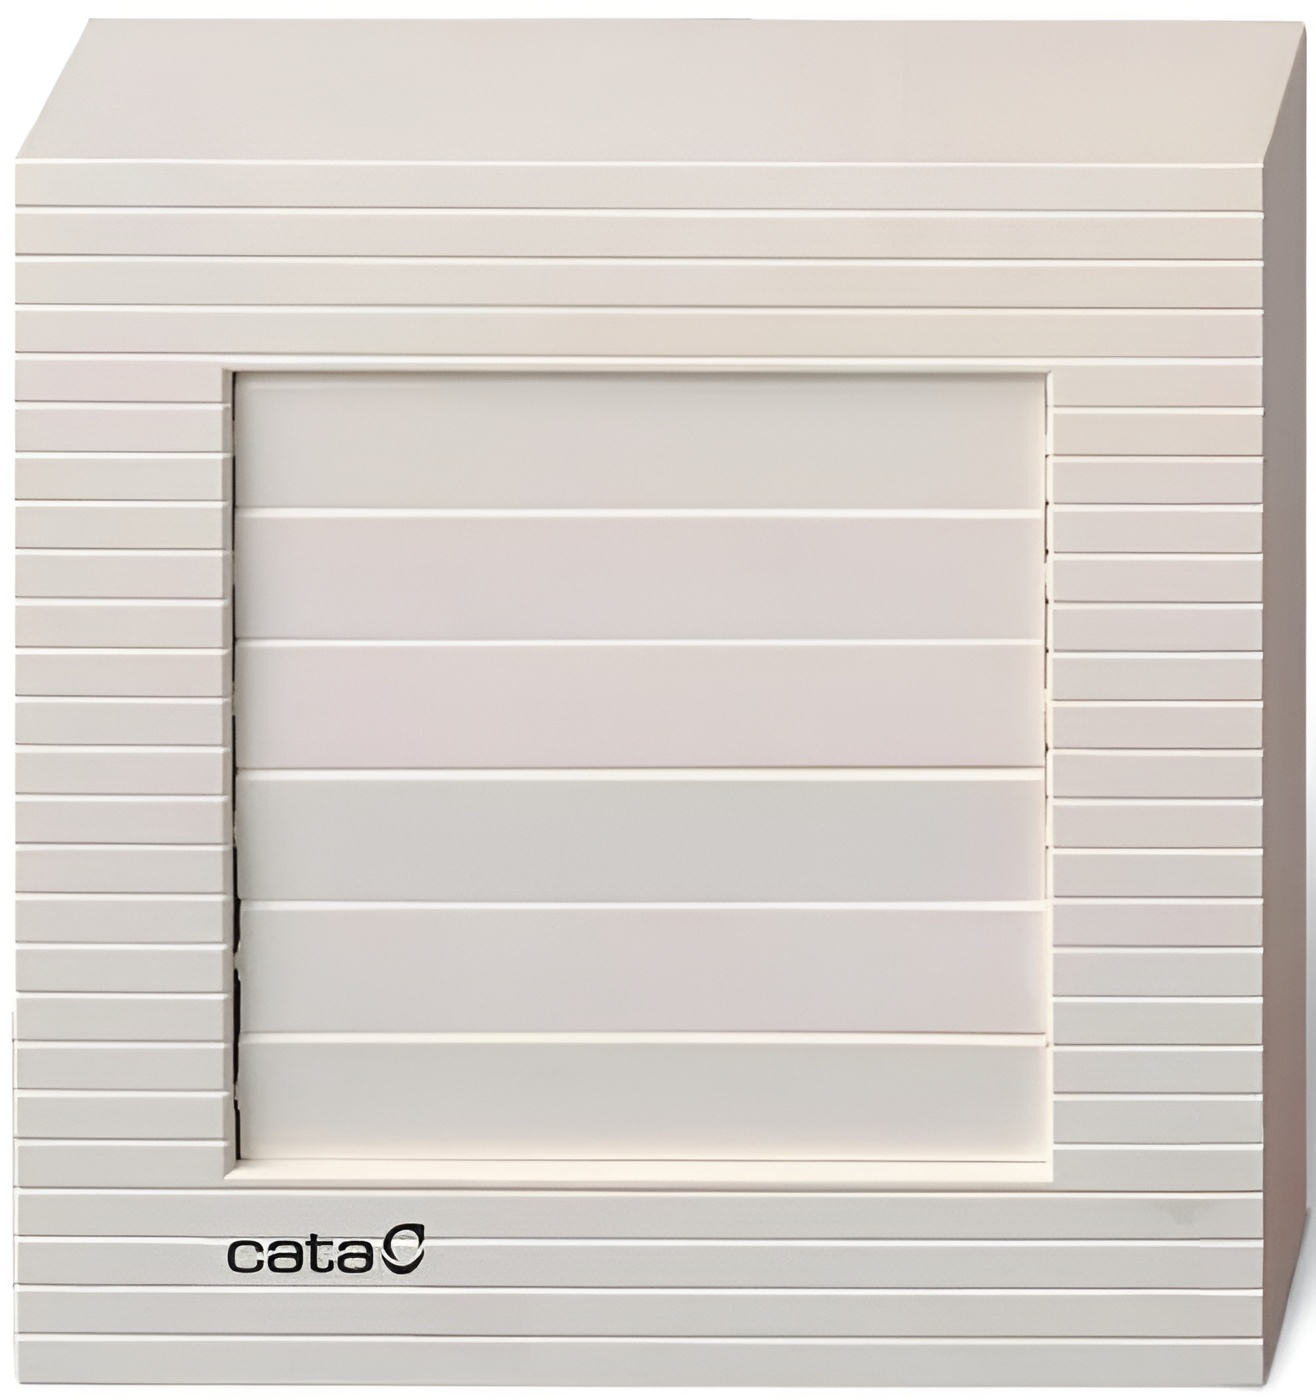 Вытяжной вентилятор Cata B-10 Matic в интернет-магазине, главное фото